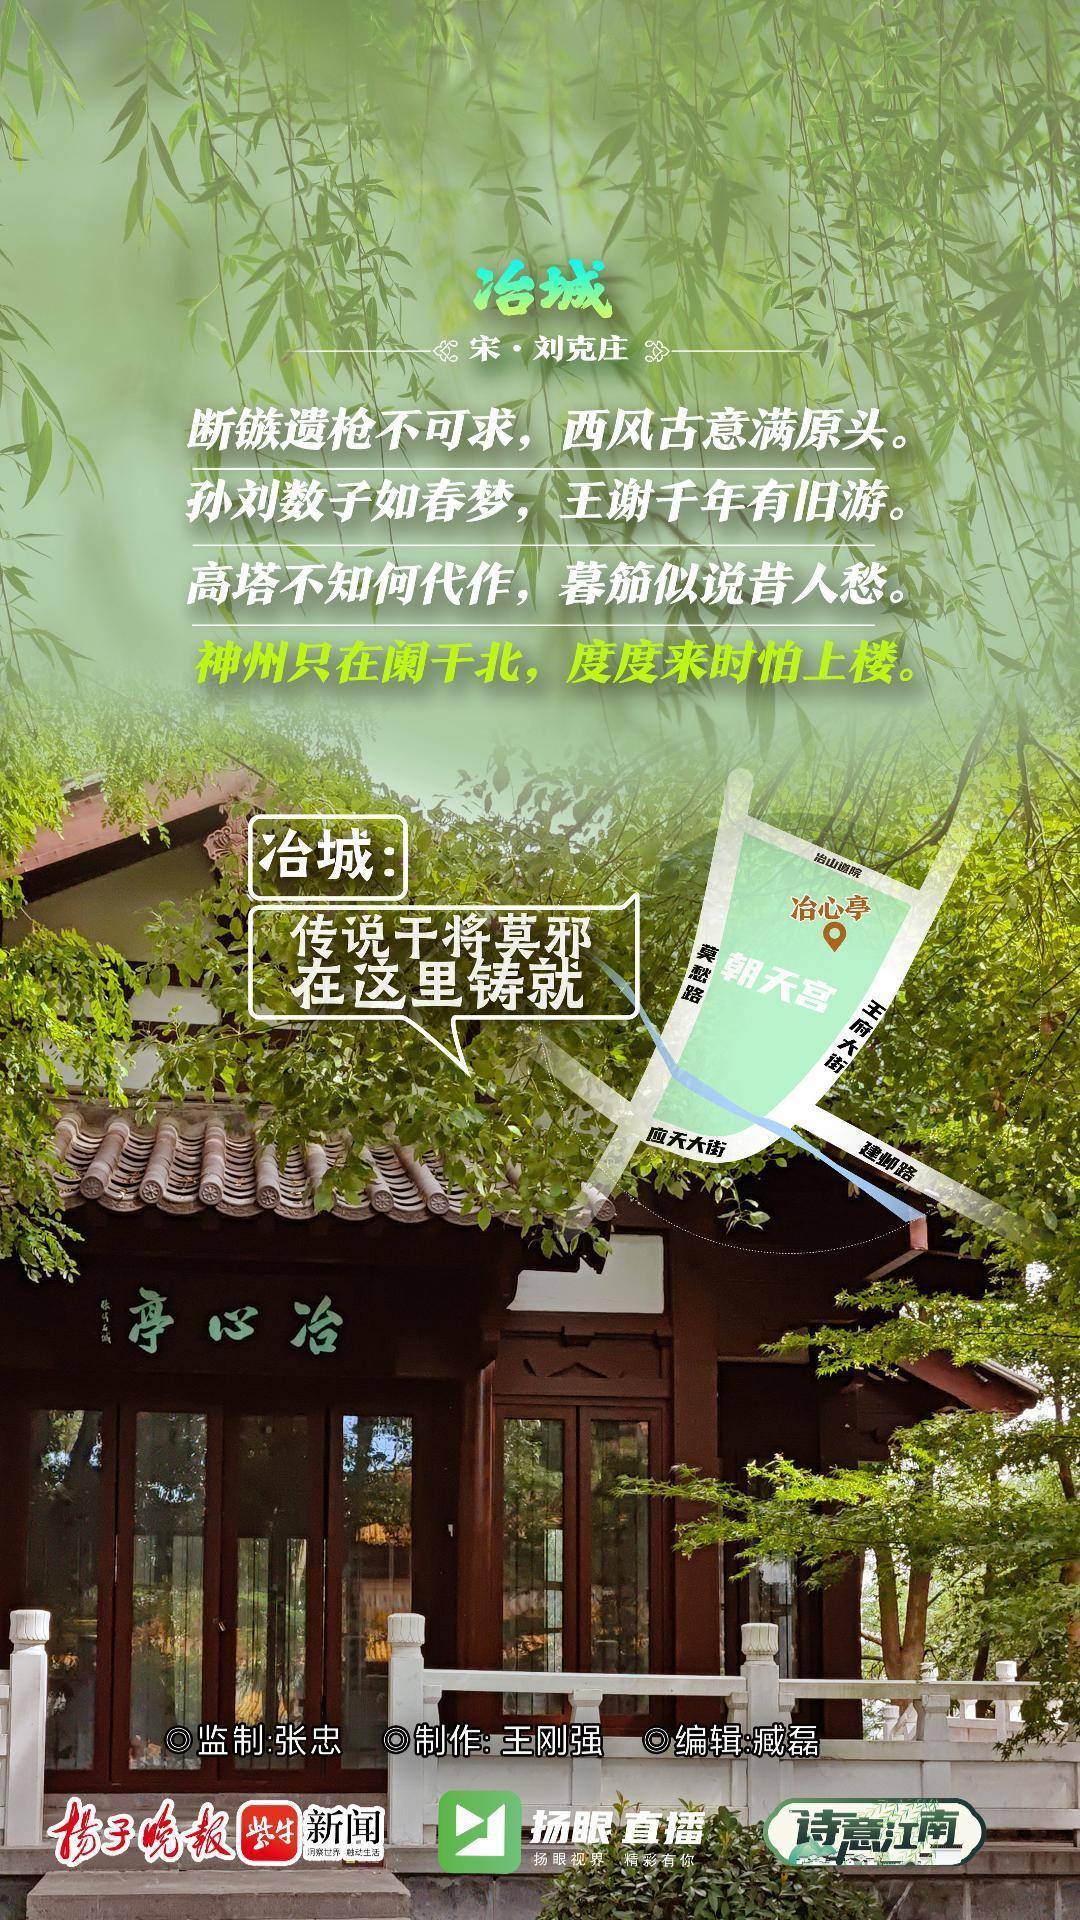 https://region-jiangsu-resource.xuexi.cn/image/1006/process/5fe06b2e0fba4cde81ffbd34228d8a24.jpg